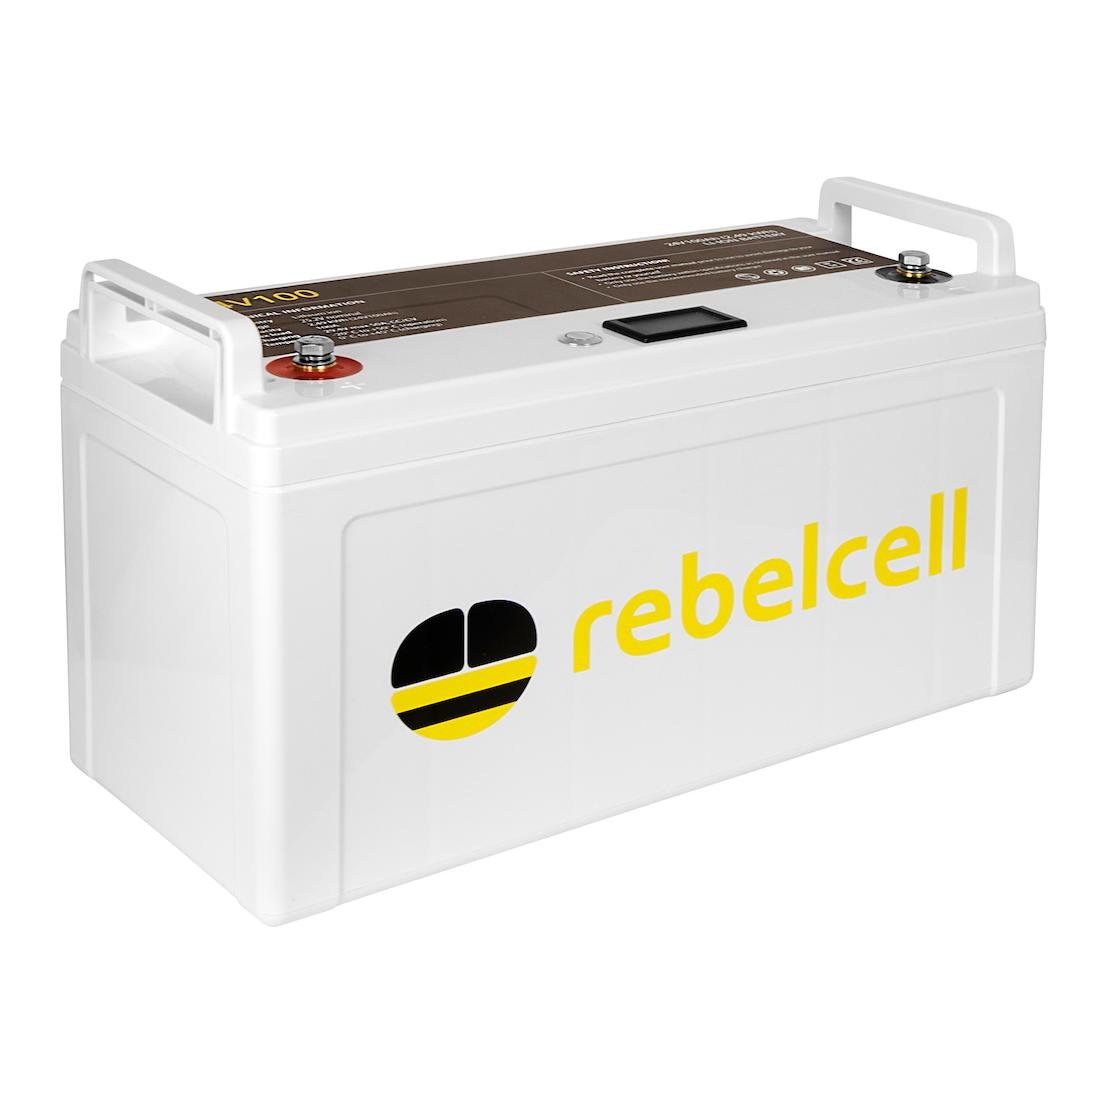 Rebelcell Quick Connect Fishfinder inkl. Sicherungshalter - Echolot  Anschlusskabel inkl. Sicherunghalter